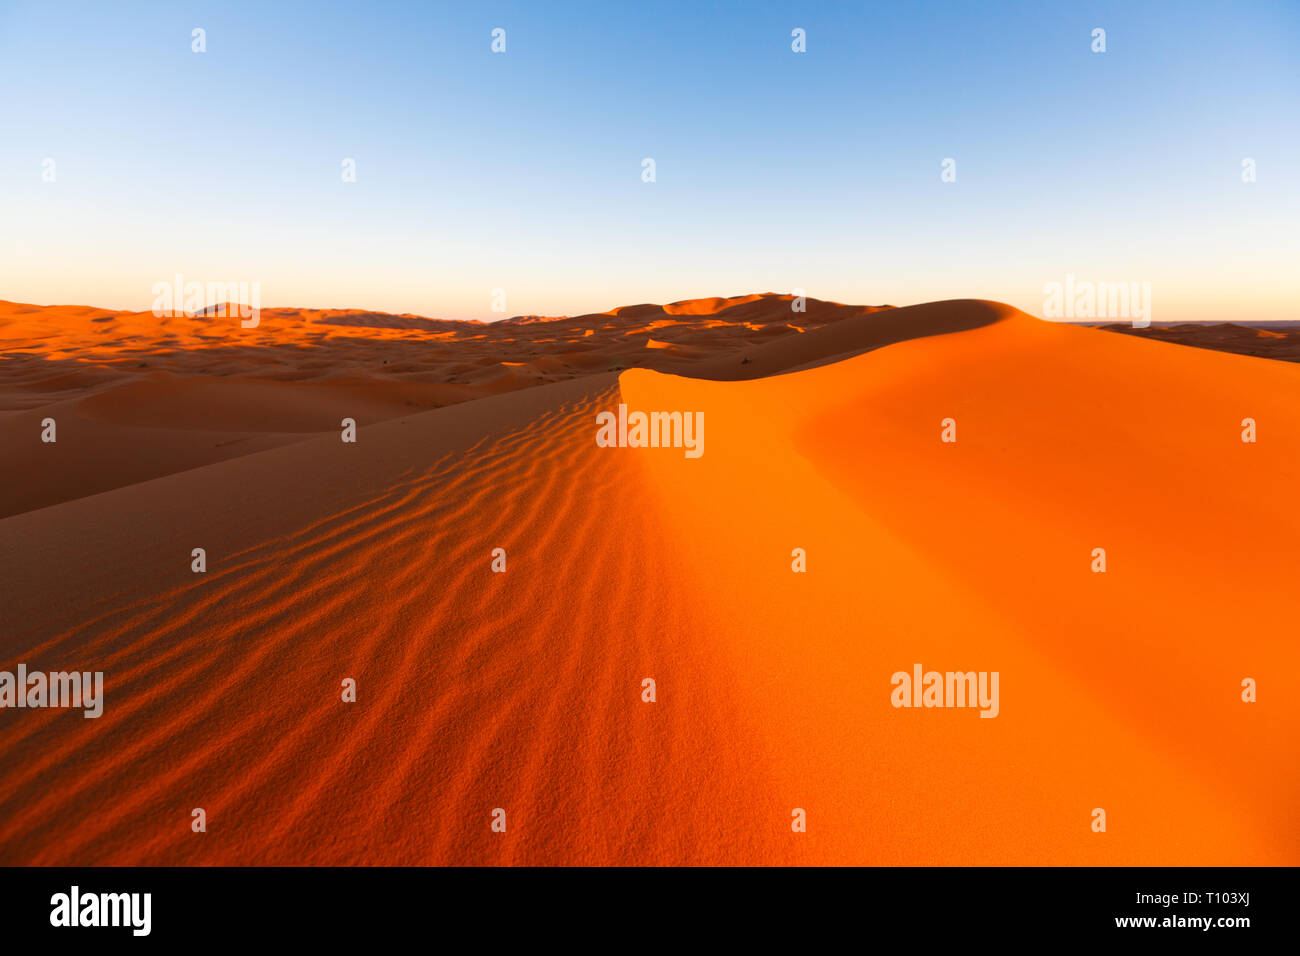 Las grandes dunas de Erg Chebbi, Marruecos, ofrecen una vista increíble de ondas y formas y golden, cambiando los colores naranja y rojo durante el atardecer y sunse Foto de stock